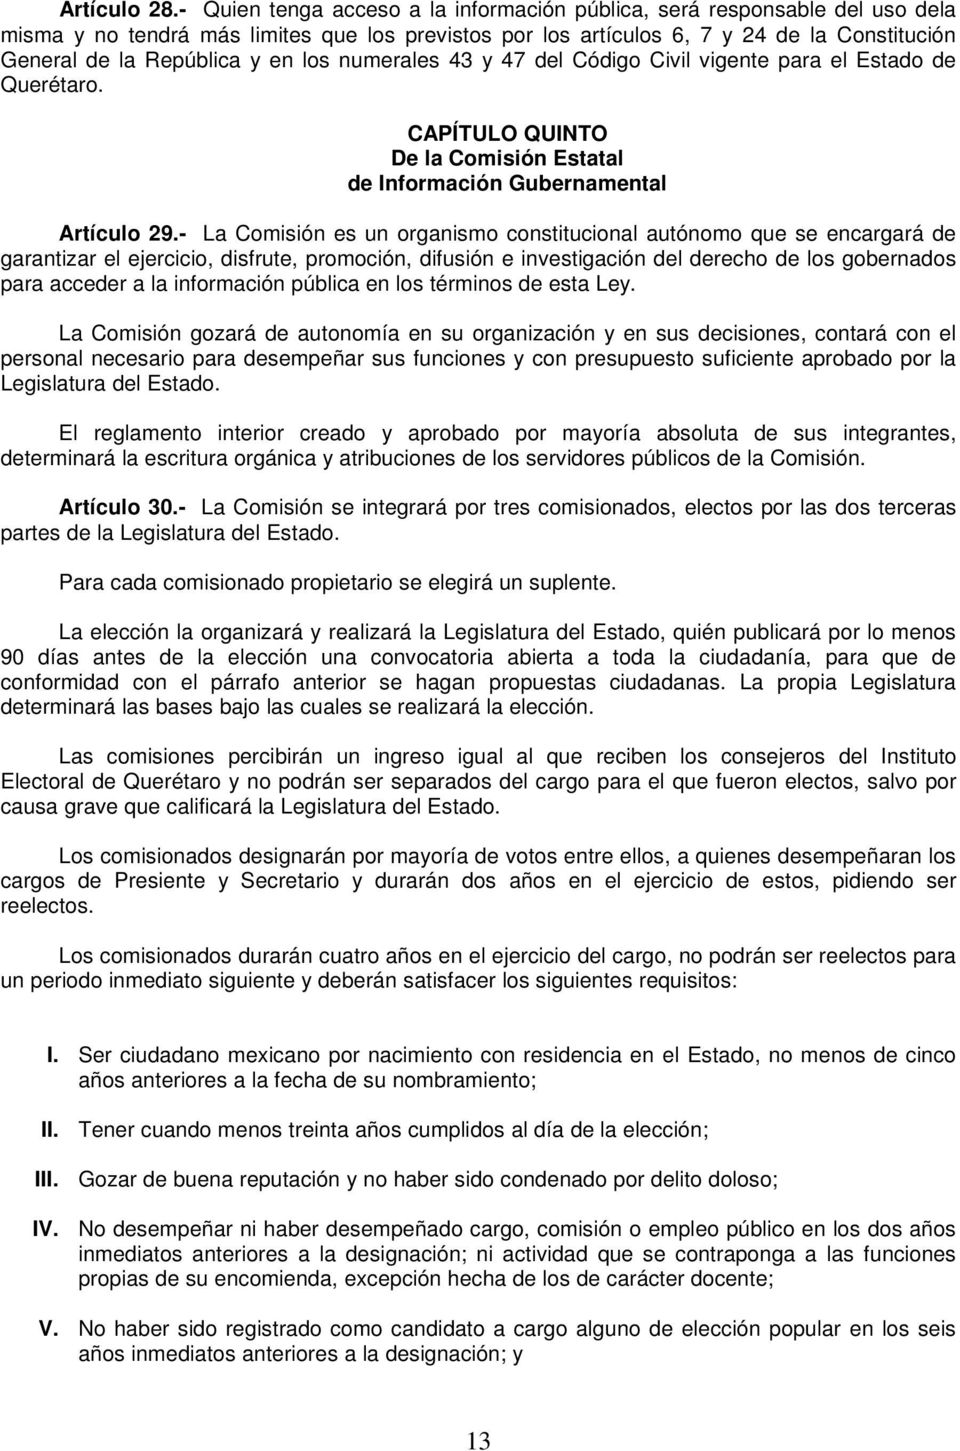 en los numerales 43 y 47 del Código Civil vigente para el Estado de Querétaro. CAPÍTULO QUINTO De la Comisión Estatal de Información Gubernamental Artículo 29.